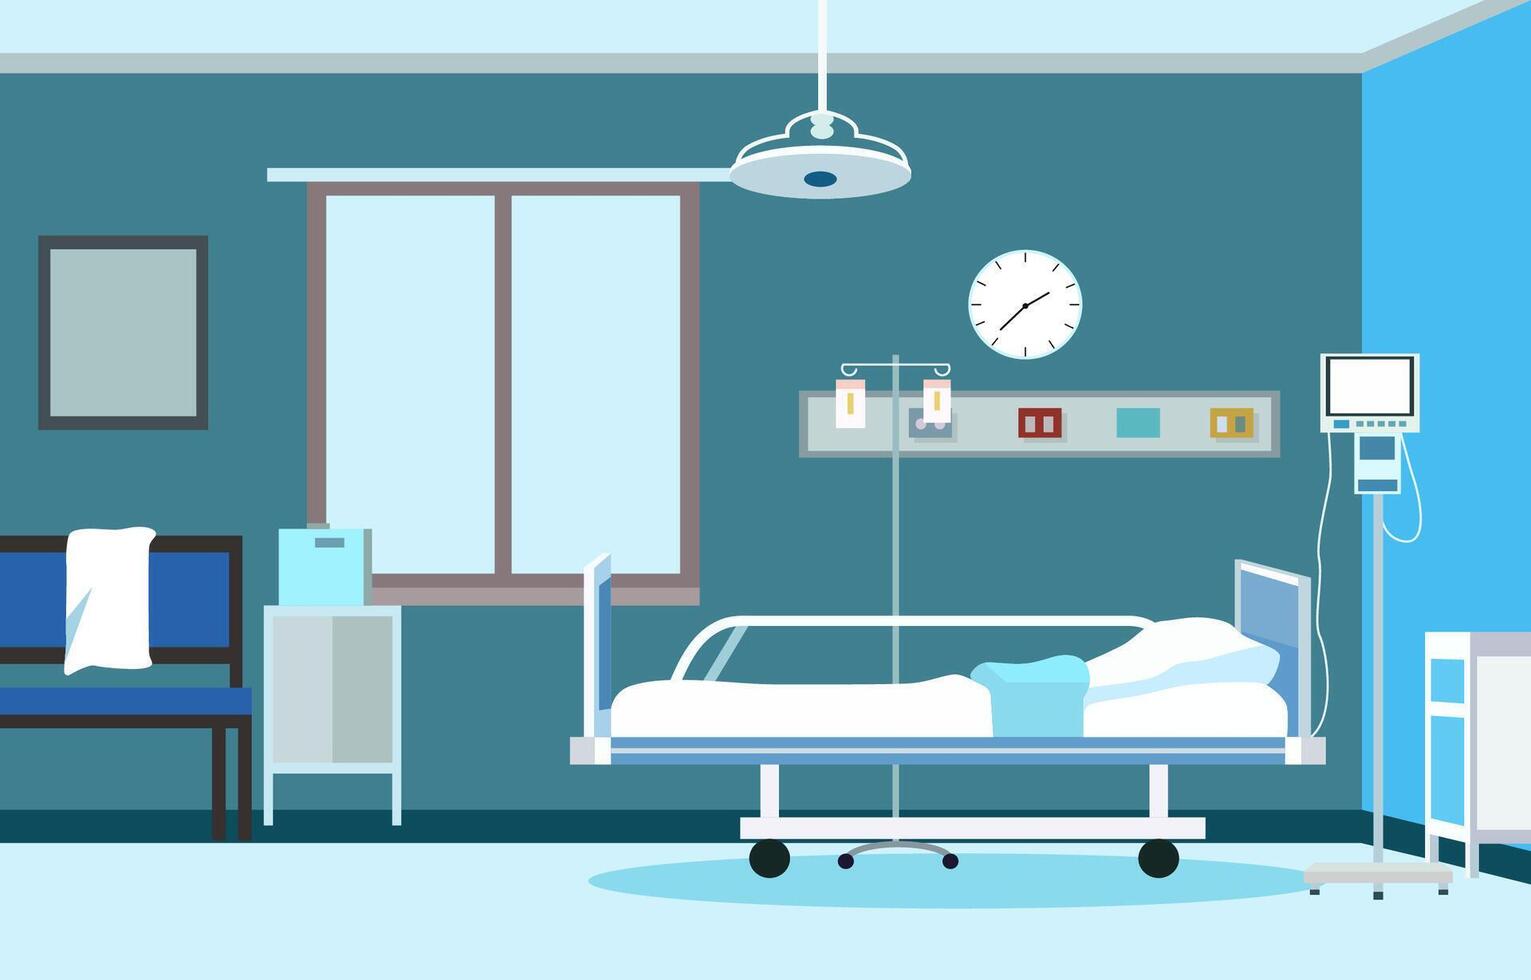 interiör landskap av sjukhus öppenvård rum med säng och hälsa medicinsk utrustning vektor